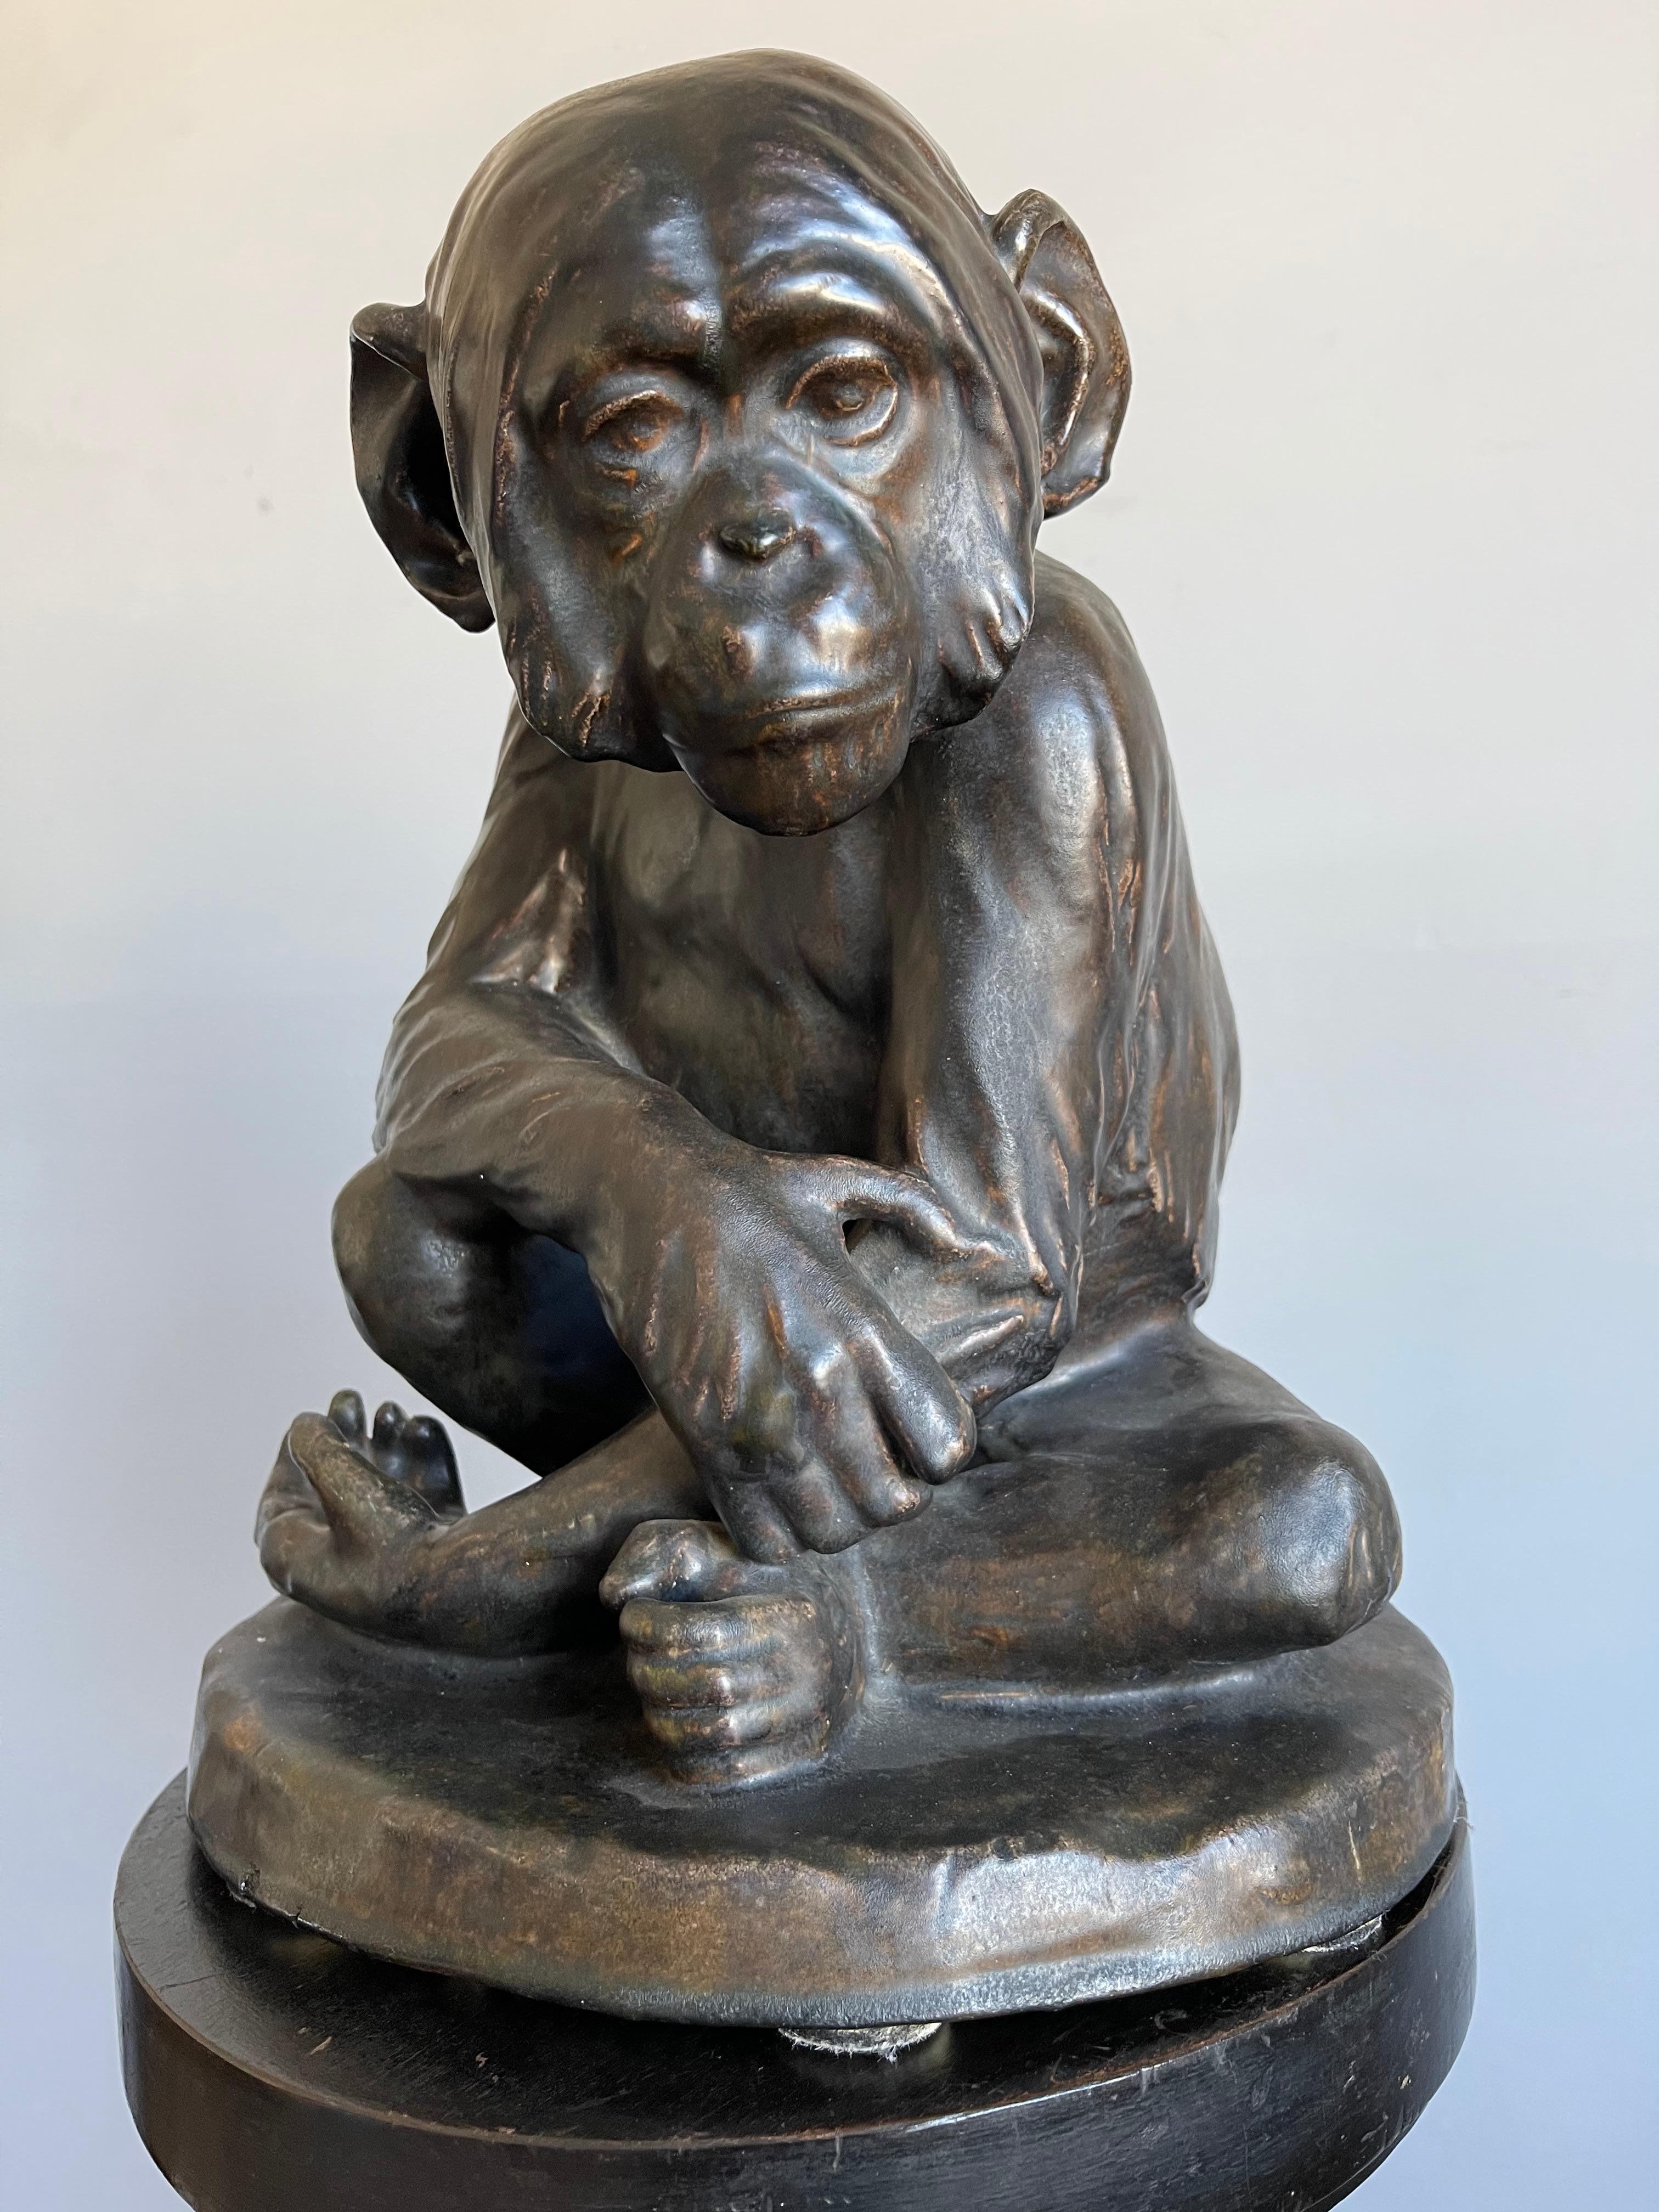 Splendida e grande scultura originale d'epoca di un bellissimo scimpanzé/scimmia.

Nel corso degli anni abbiamo posseduto e venduto un discreto numero di bellissime sculture di qualità in tutti i tipi di materiali, ma non abbiamo mai avuto il